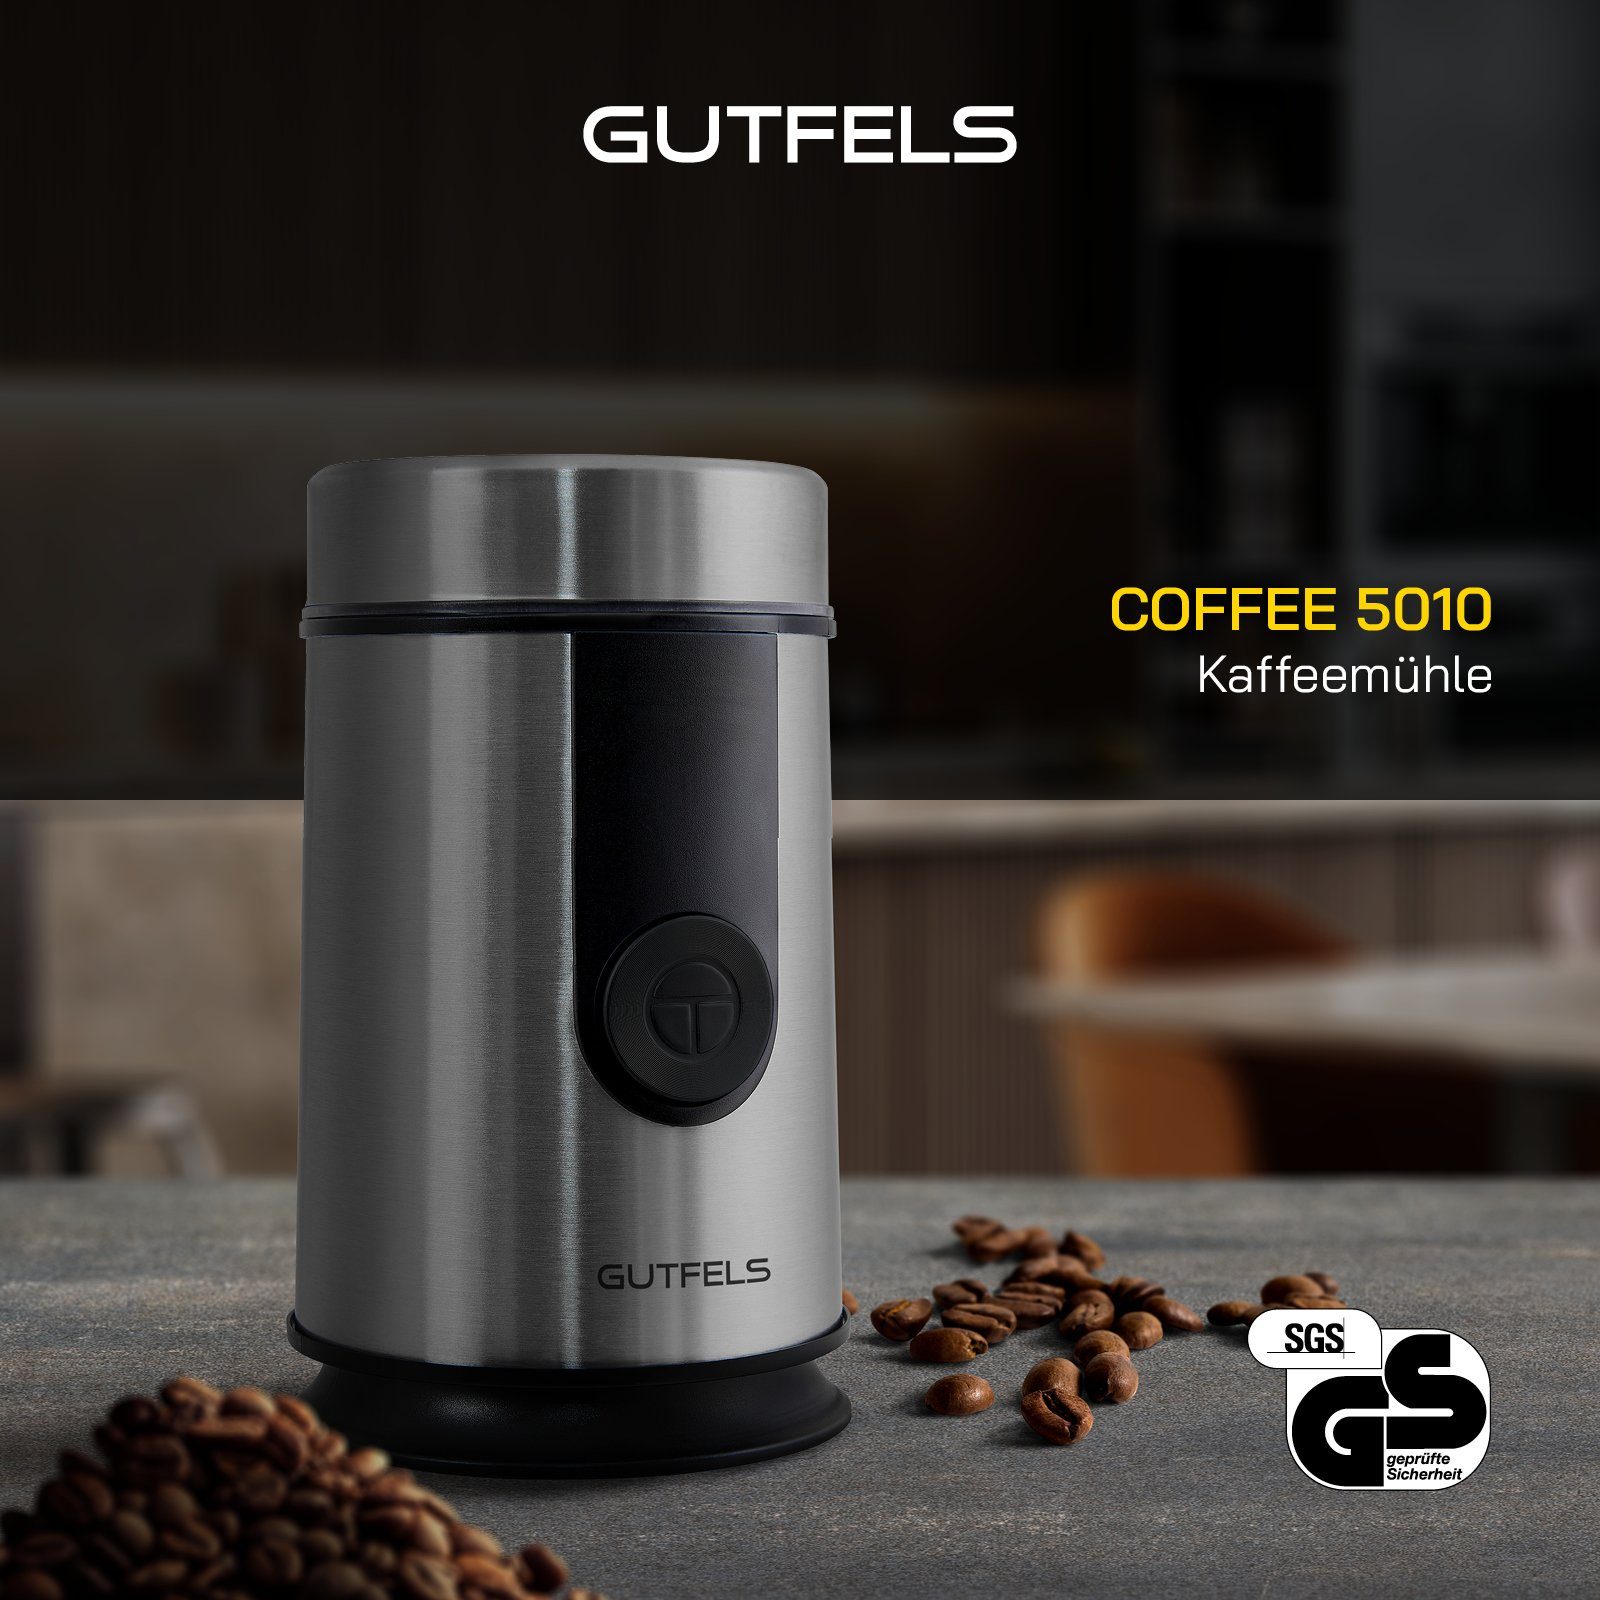 Gutfels Kaffeemühle Kontrolle für W, g Bohnenbehälter, Nüsse, 5010, Mahlgrad 50,00 COFFEE & Bohnen, Edelstahlklinge, 200,00 Gewürze